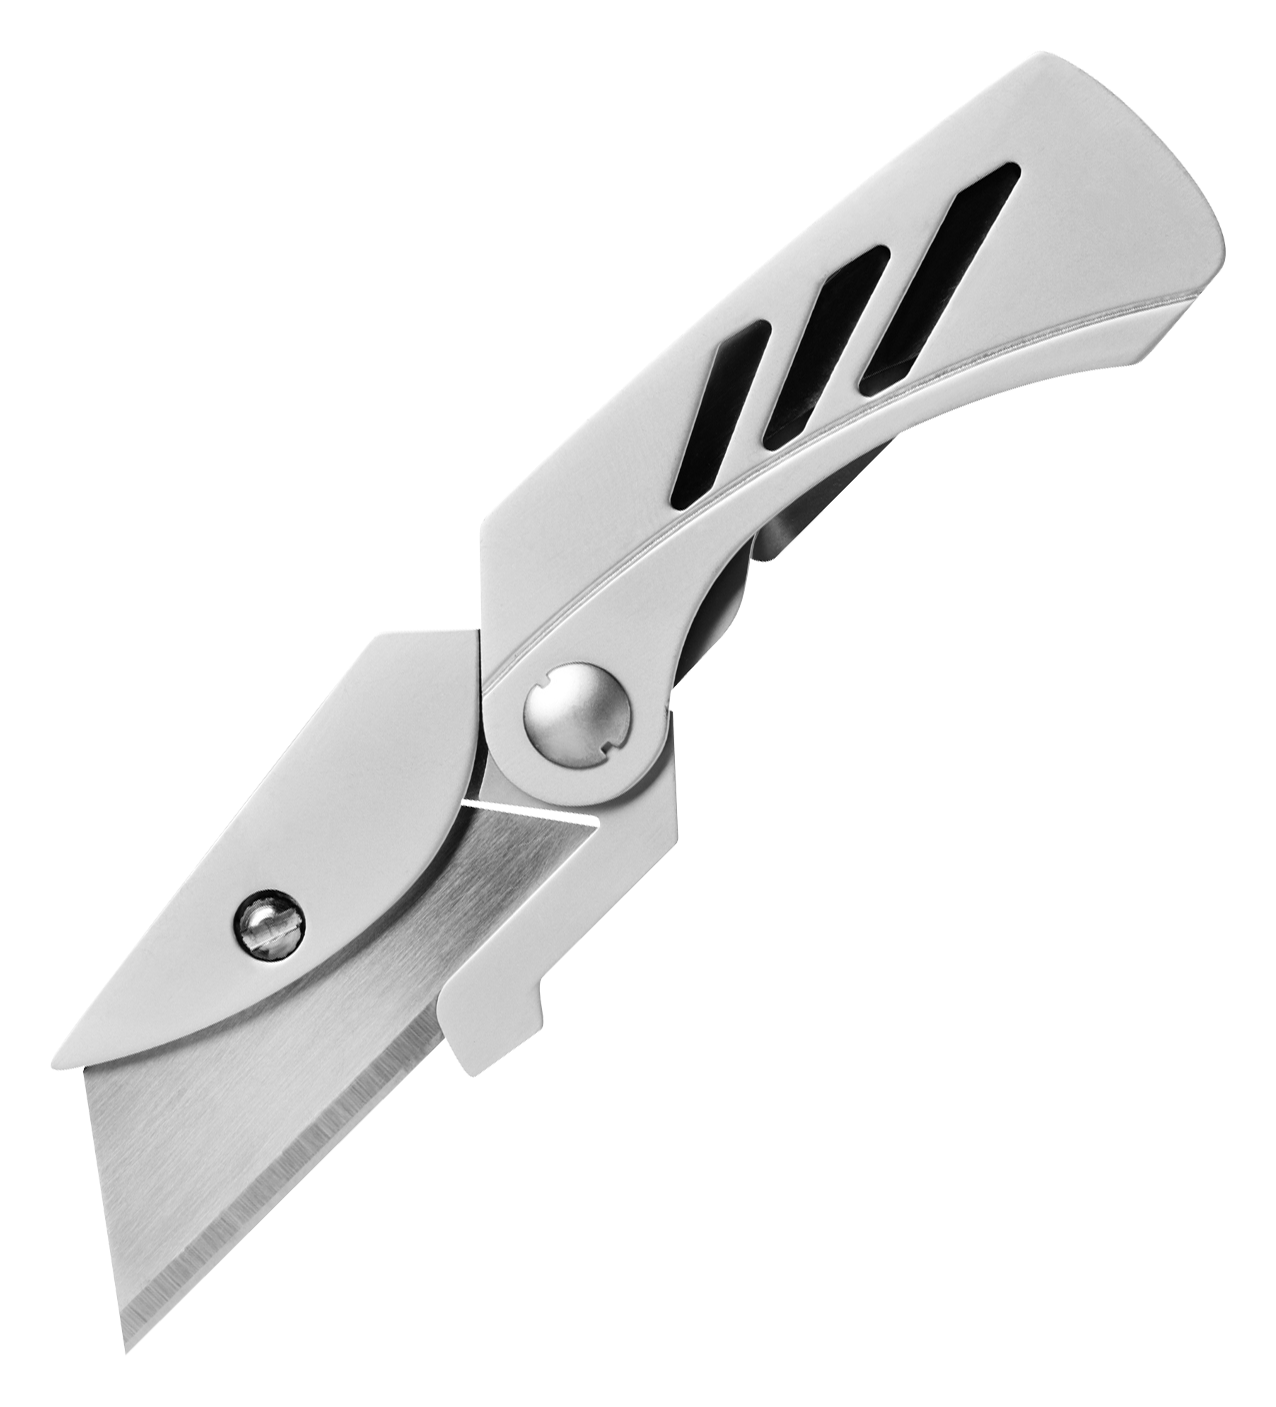 Gerber EAB Lite Folding Clip Knife